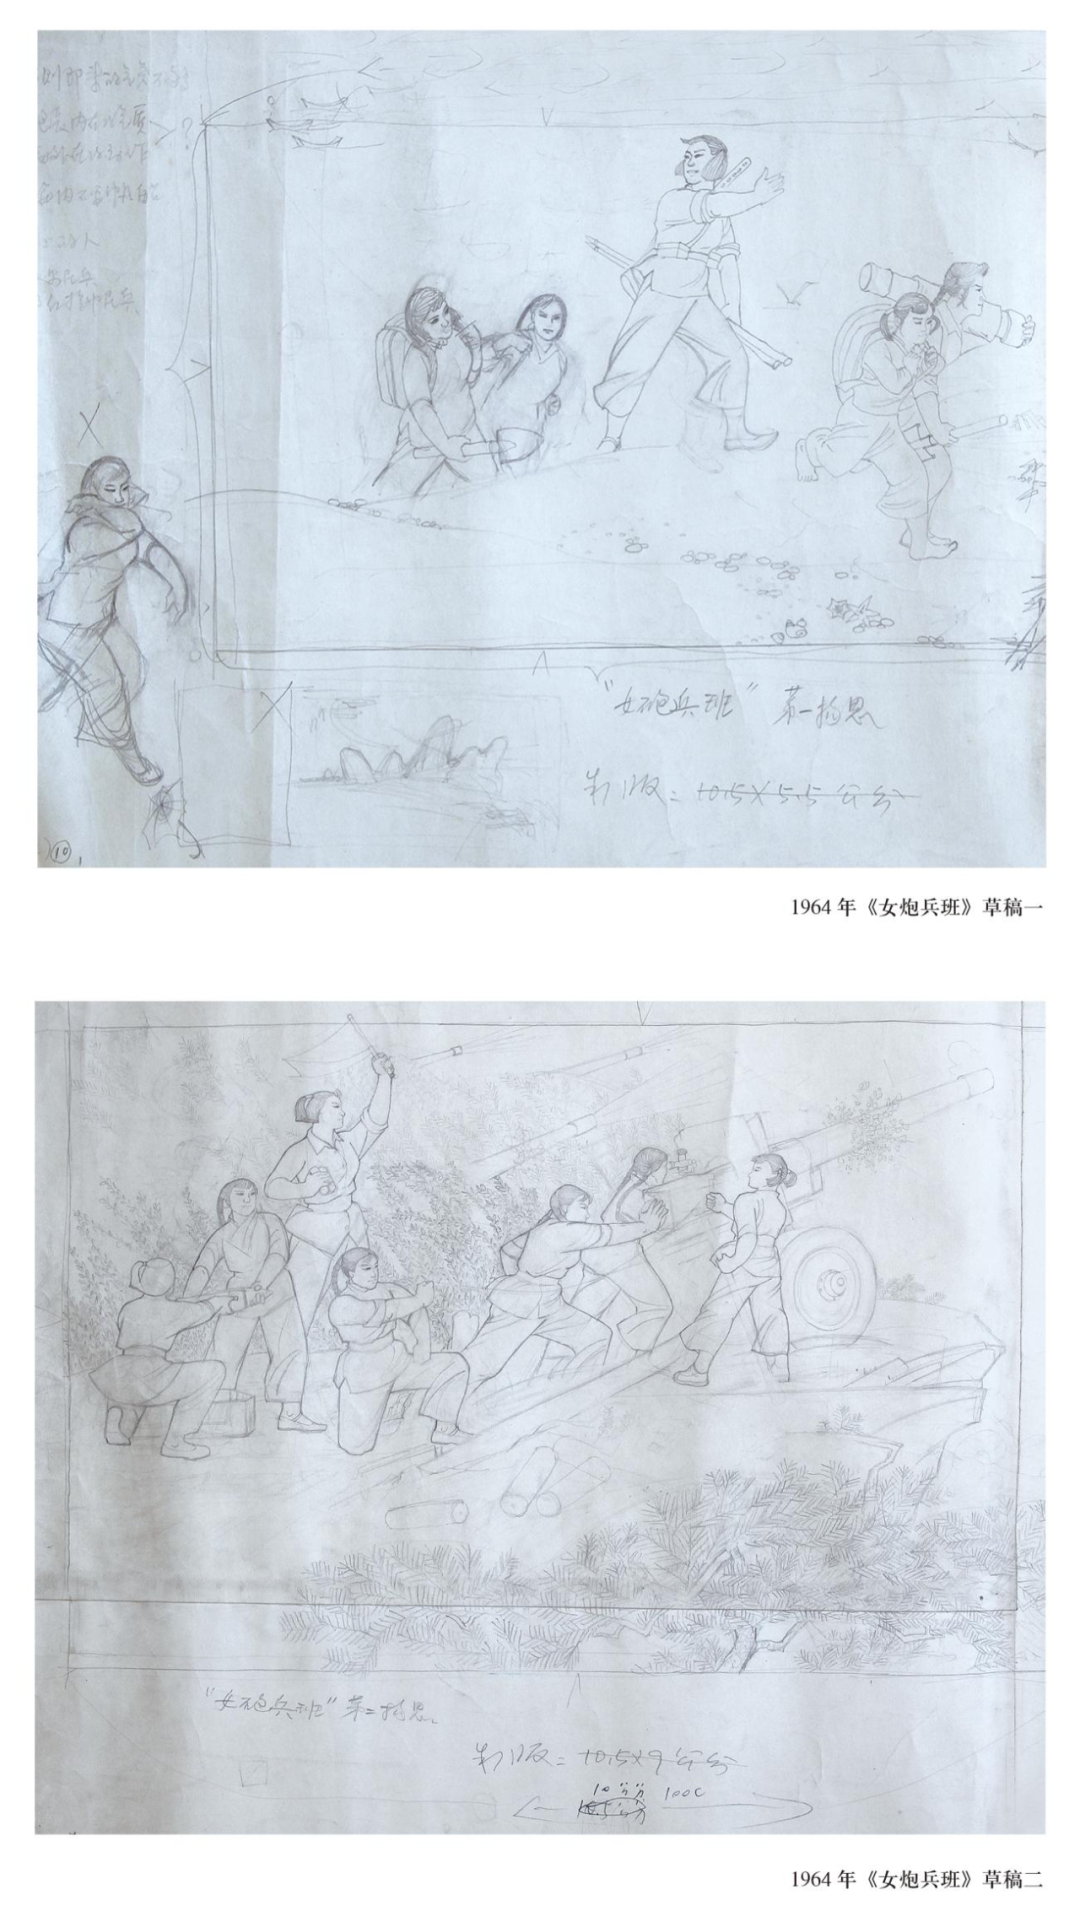 著名艺术家李百钧的年画故事③——《女炮兵班》创作历程